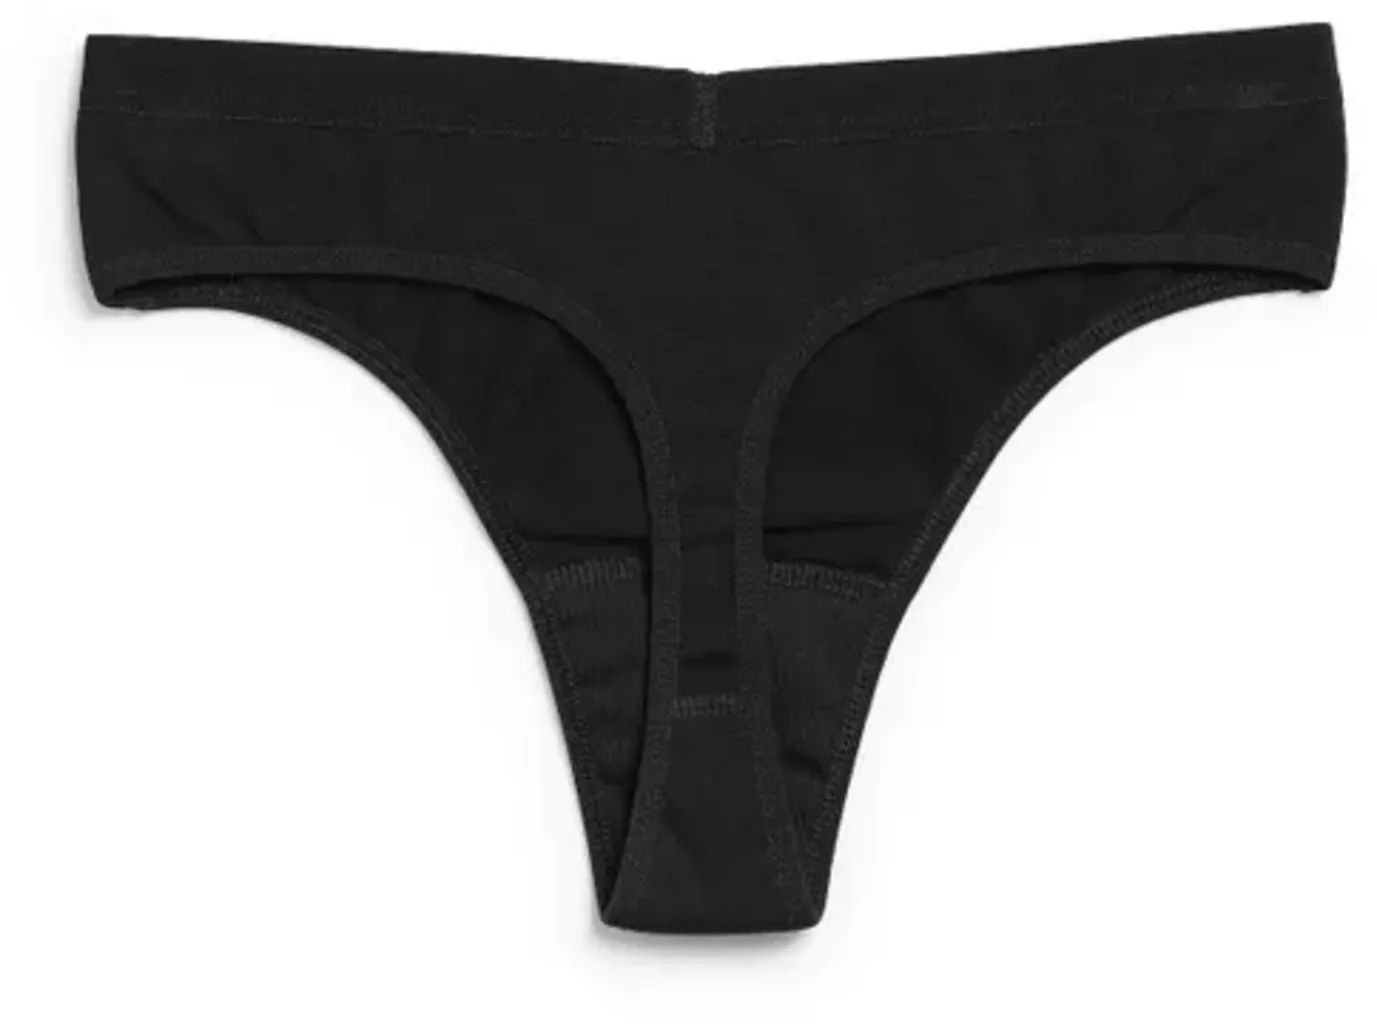 Imse Grey Bikini Period Underwear - Light Flow - Ecco Verde Online